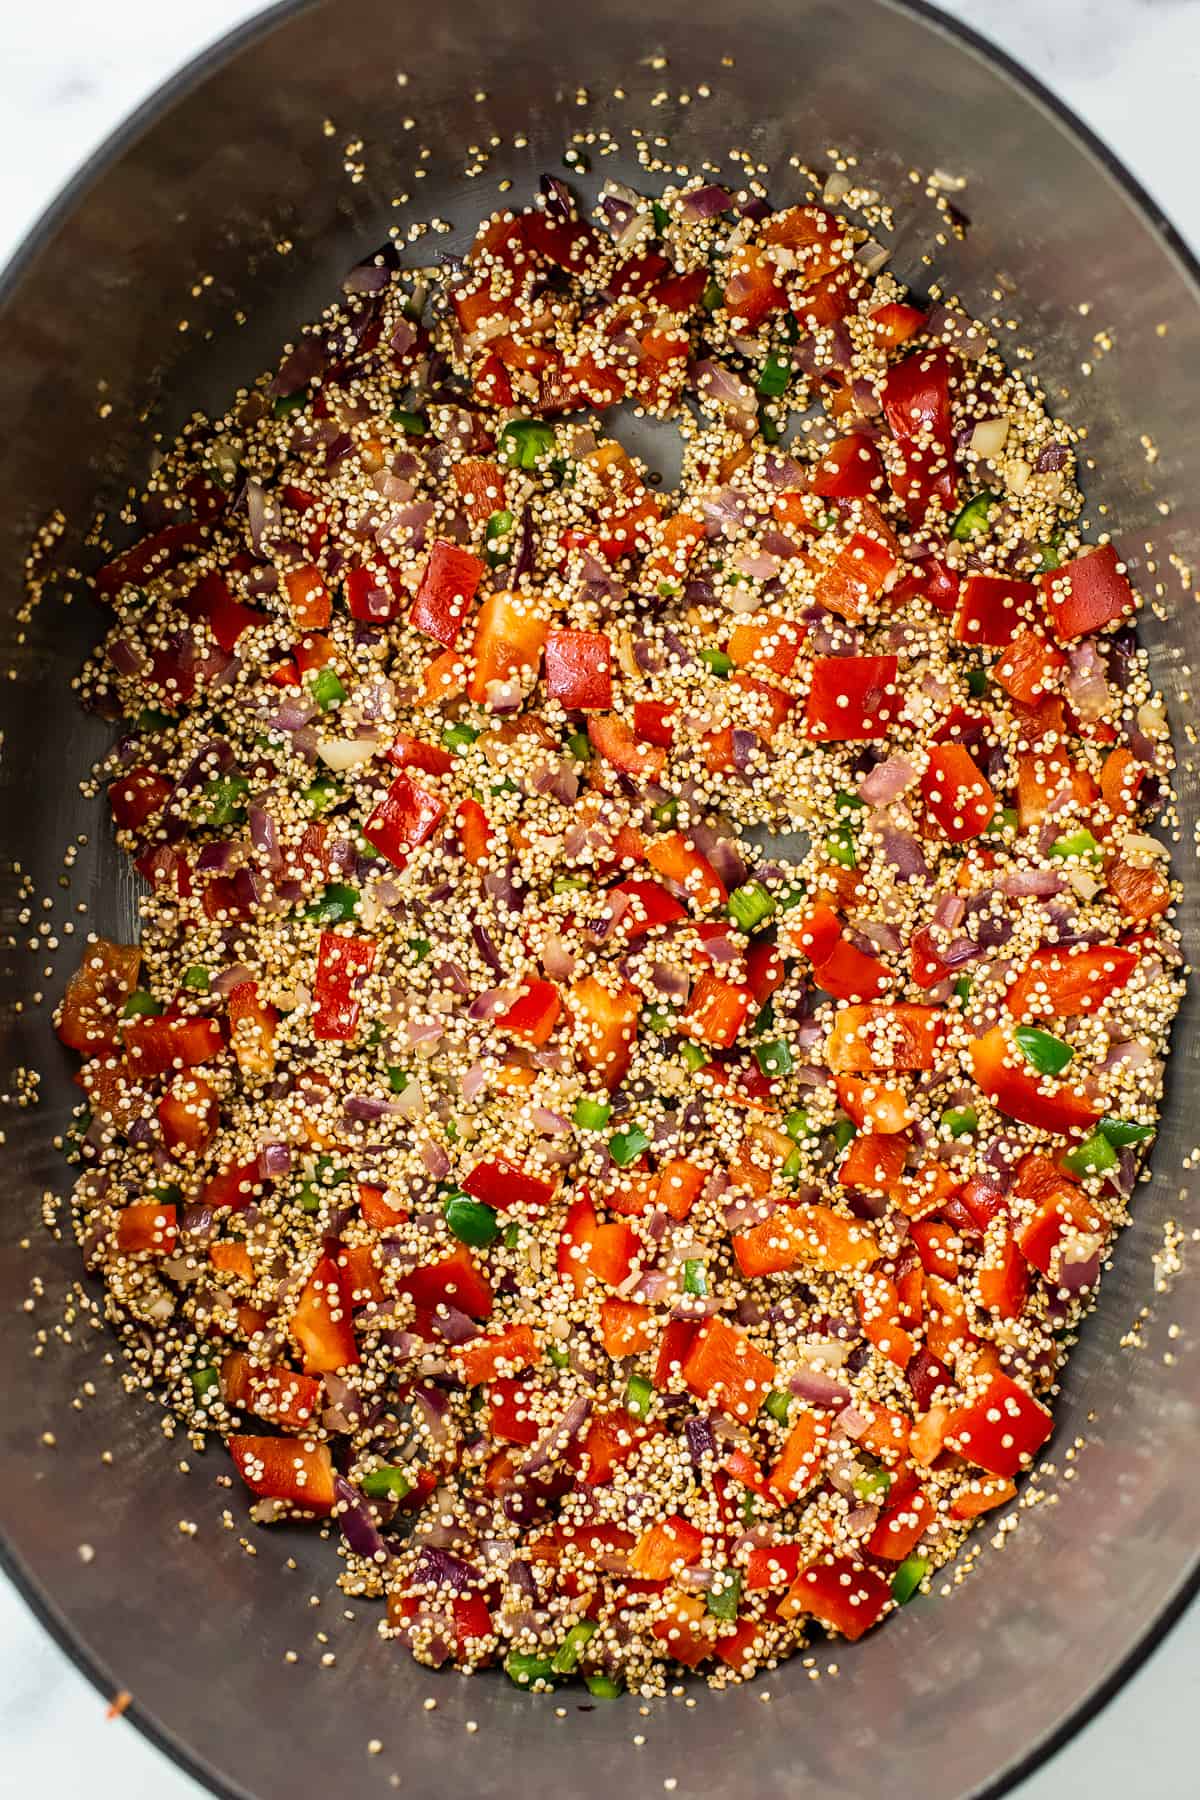 cooking quinoa chili in Dutch oven.